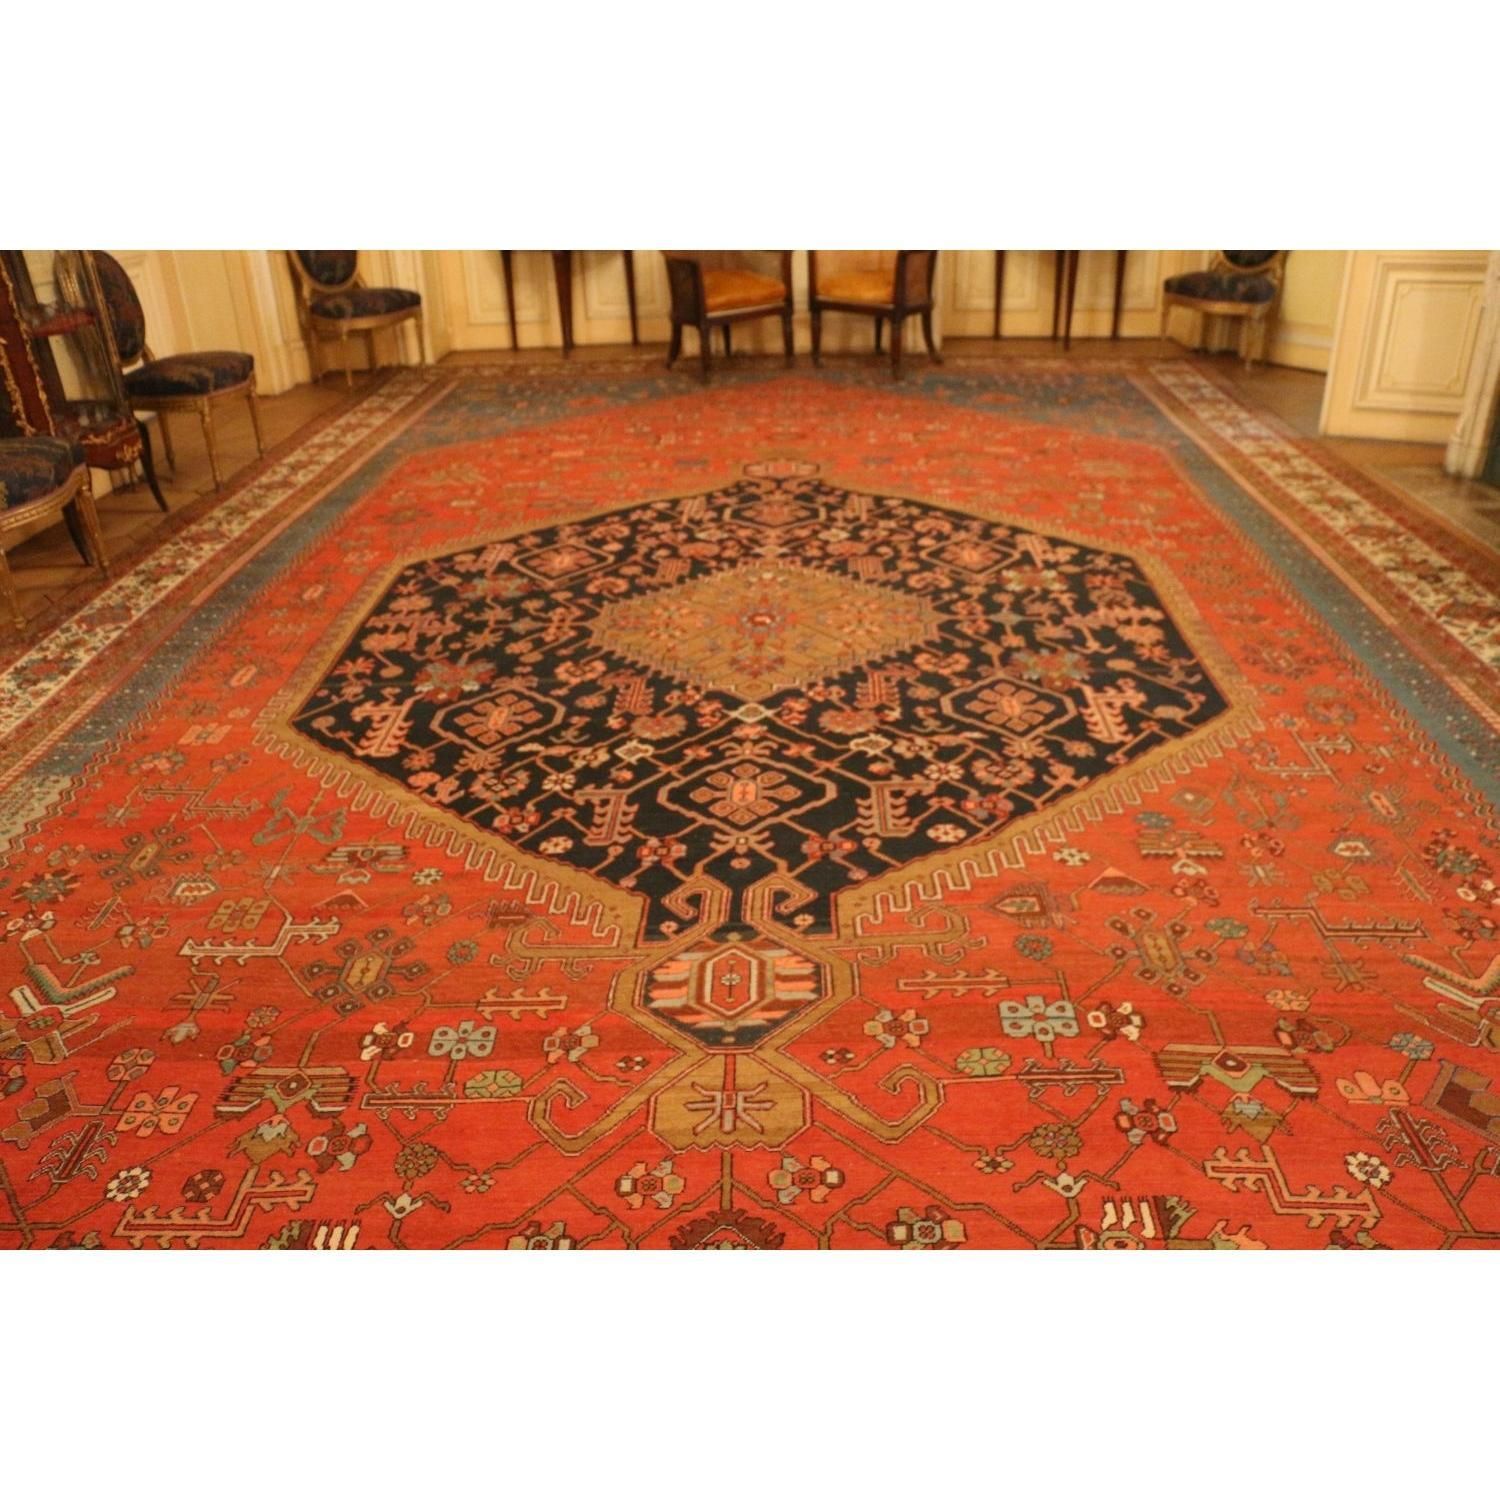 IMPORTANT TAPIS D'ORIENT EN LAINE Importante tappeto orientale in lana.

Sfondo &hellip;